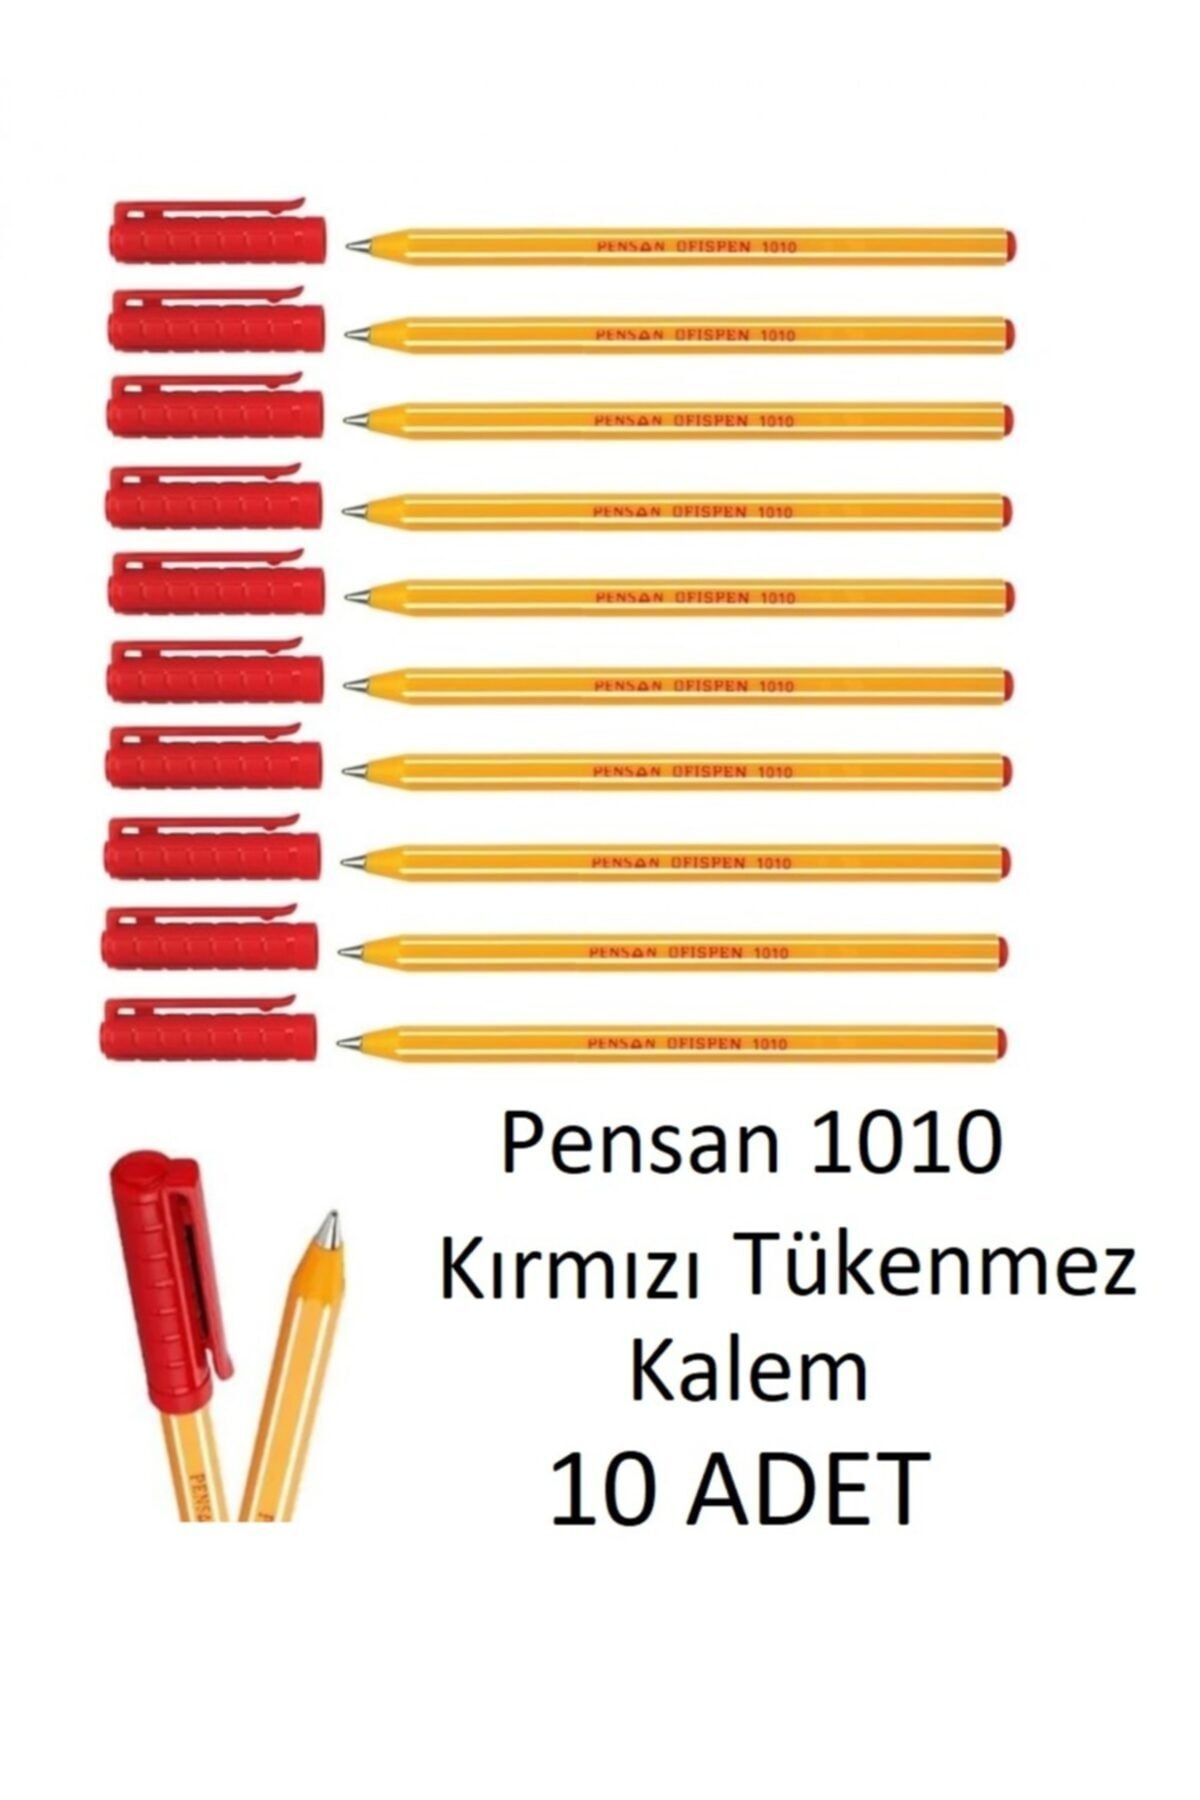 Pensan 1010 Kırmızı Tükenmez Kalem Ofispen 10 Adet